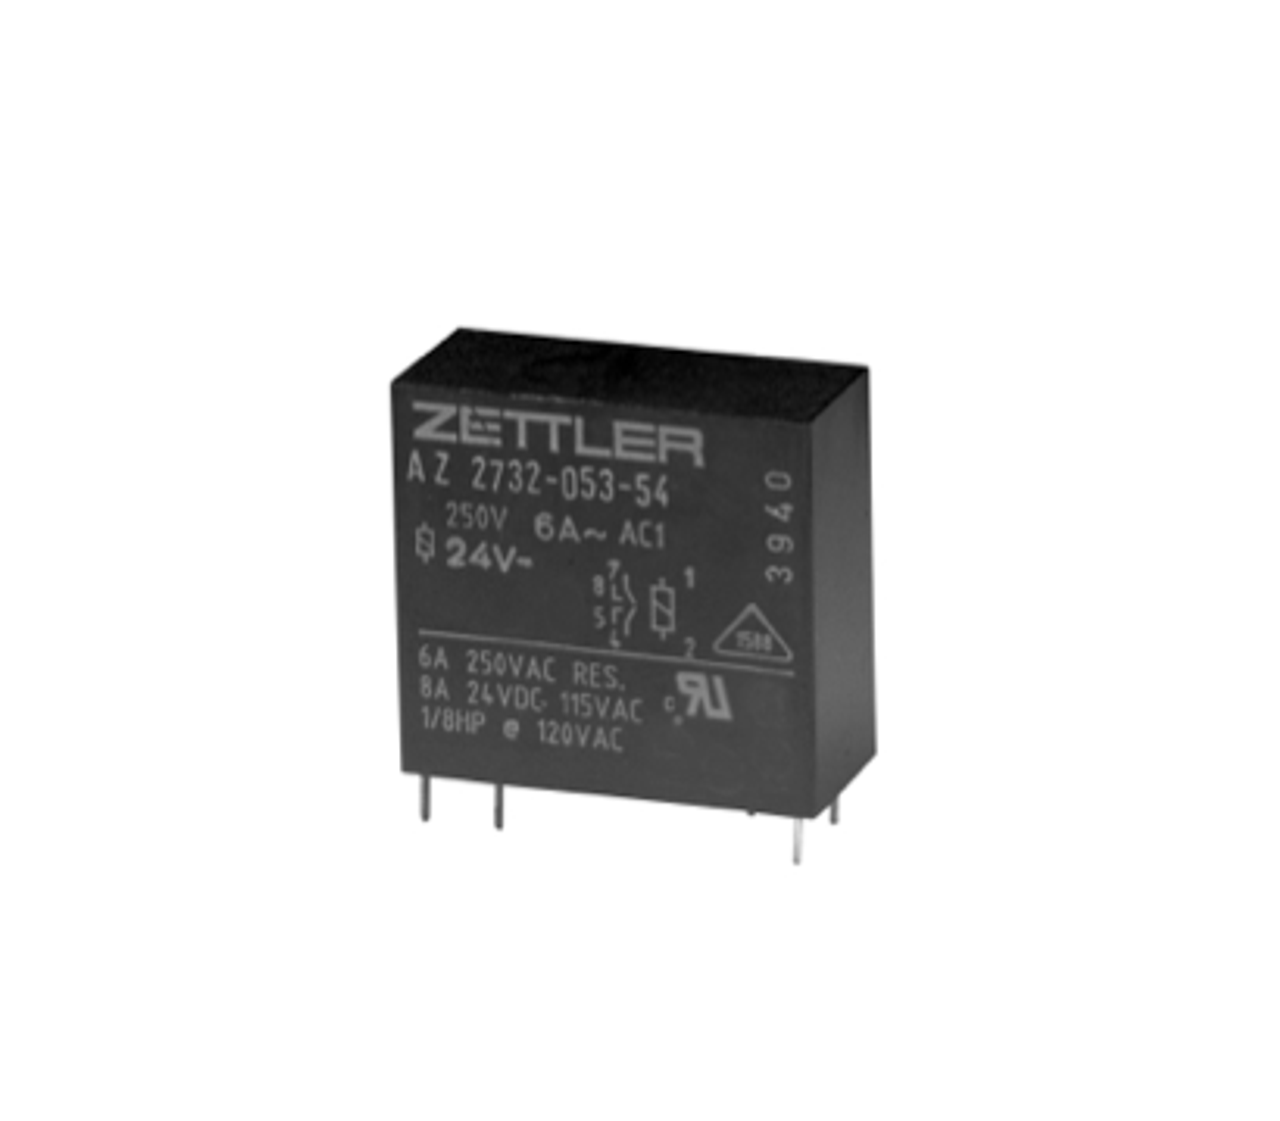 American Zettler AZ2732-08-2 Power Relay